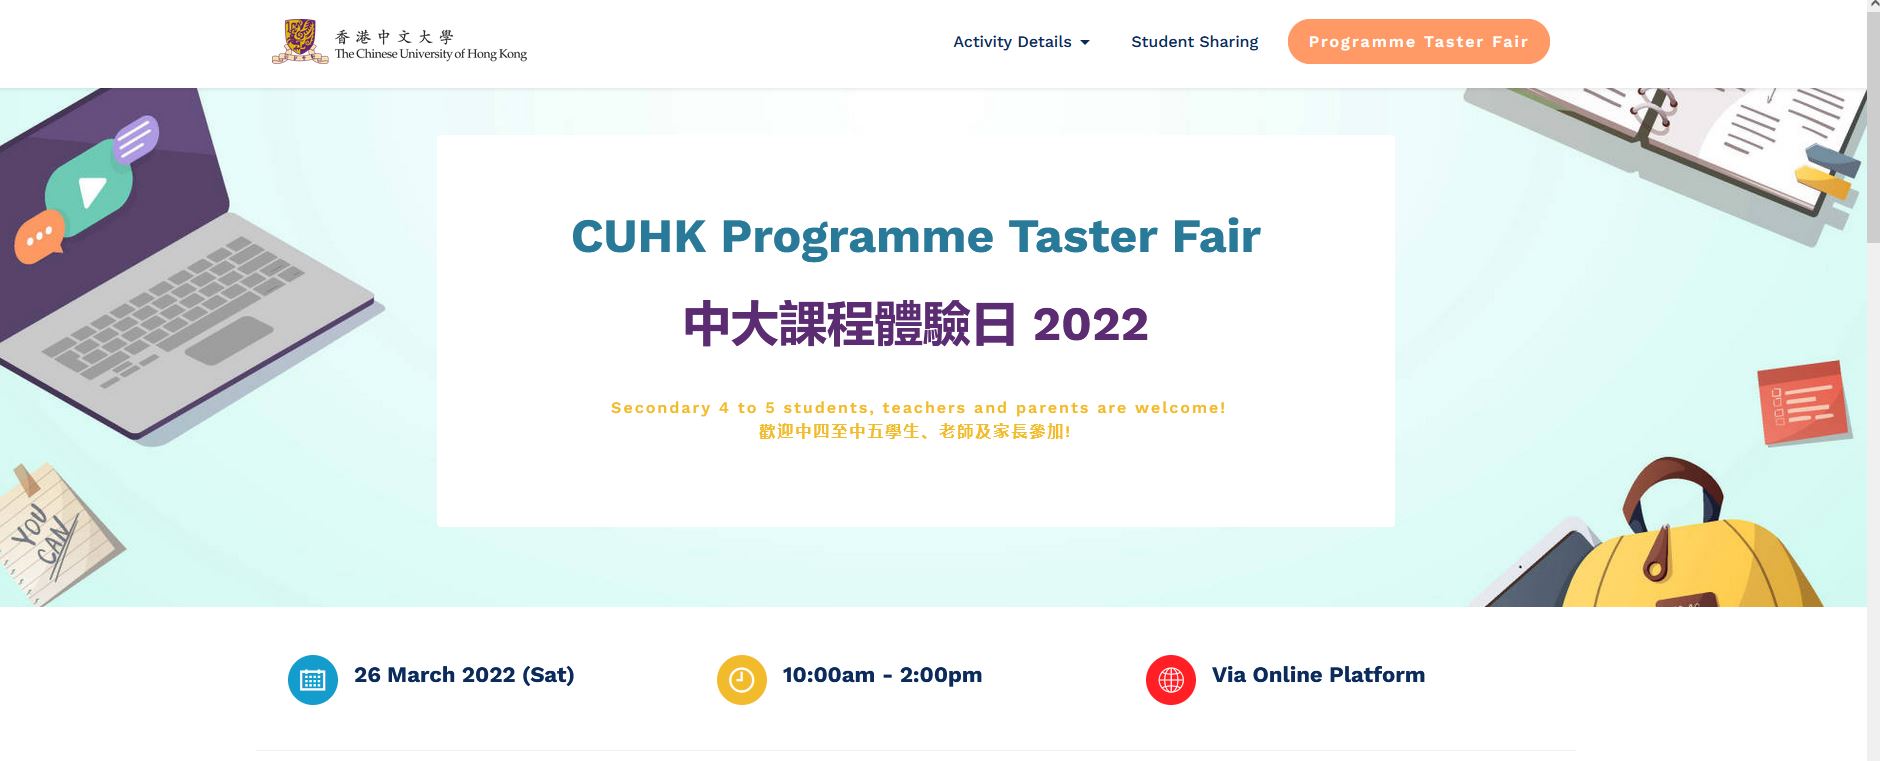 CUHK Program Taster Fair 2022 – An Introduction to FinTech